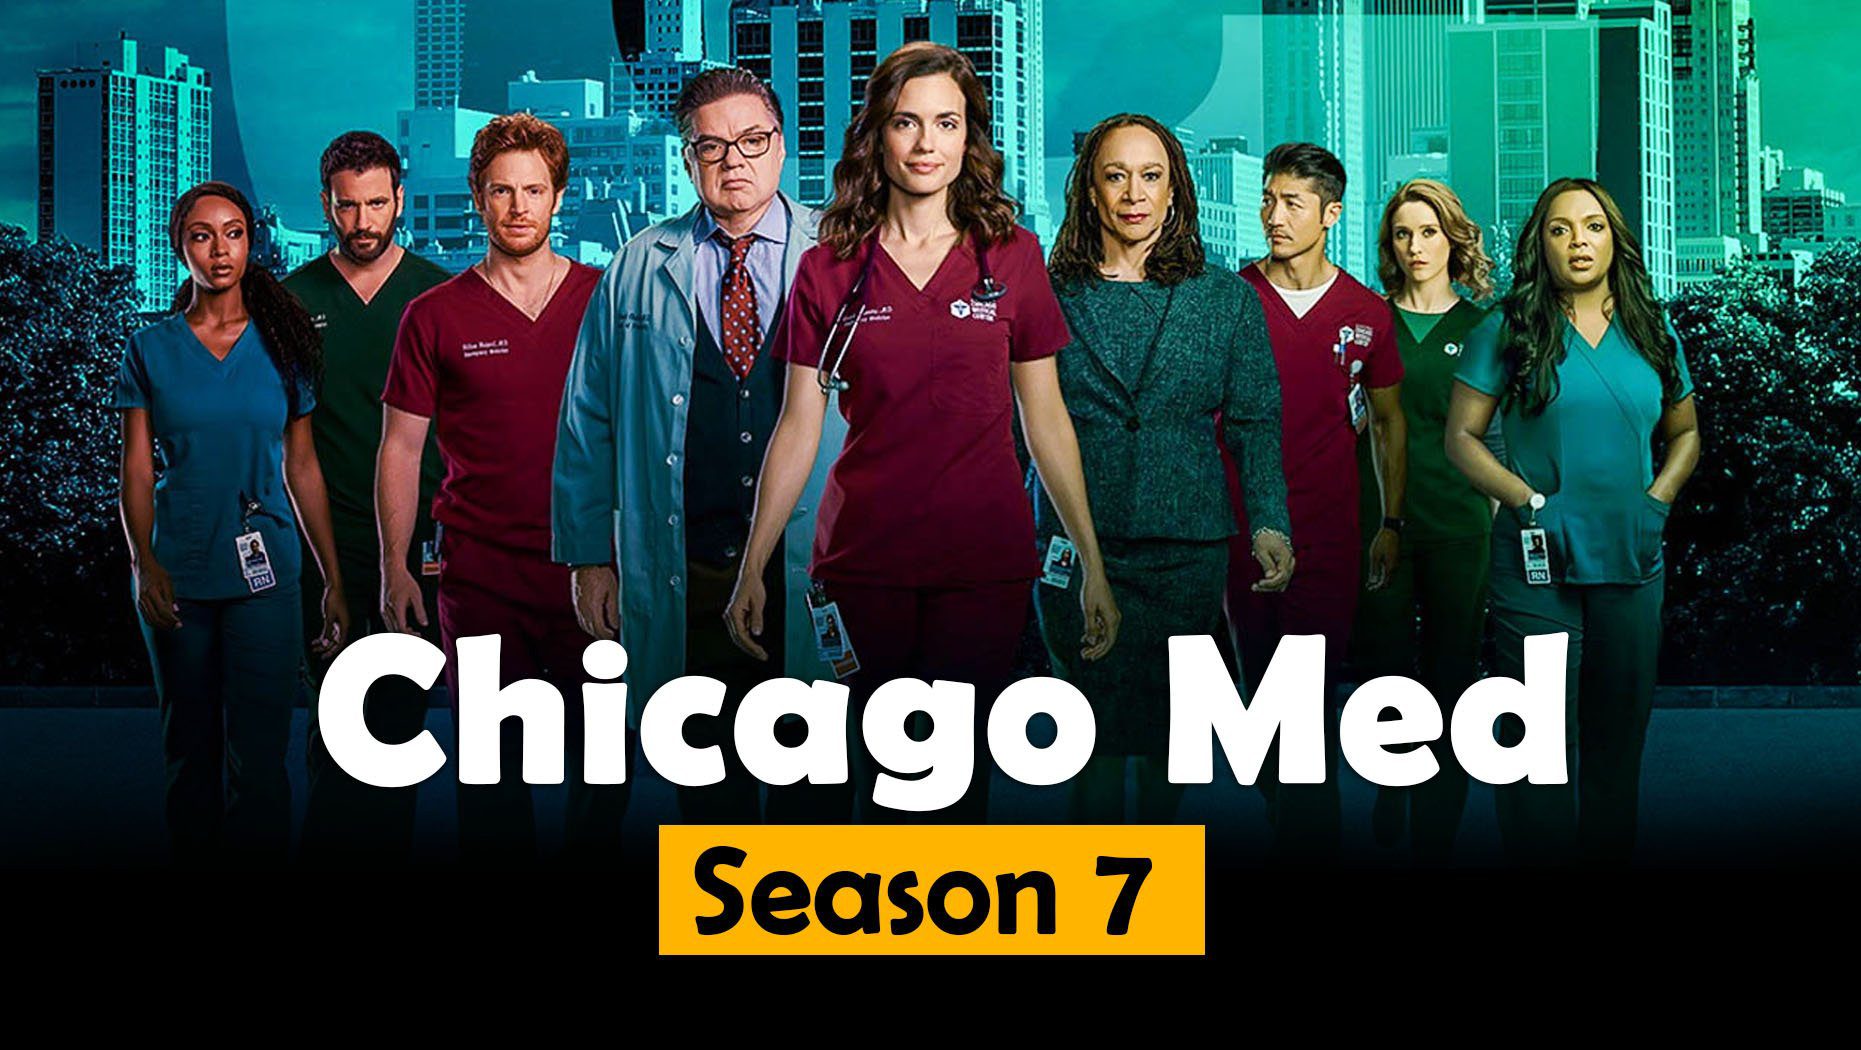 Chicago Med Season 7 Episode 1 Release Date & Preview OtakuKart